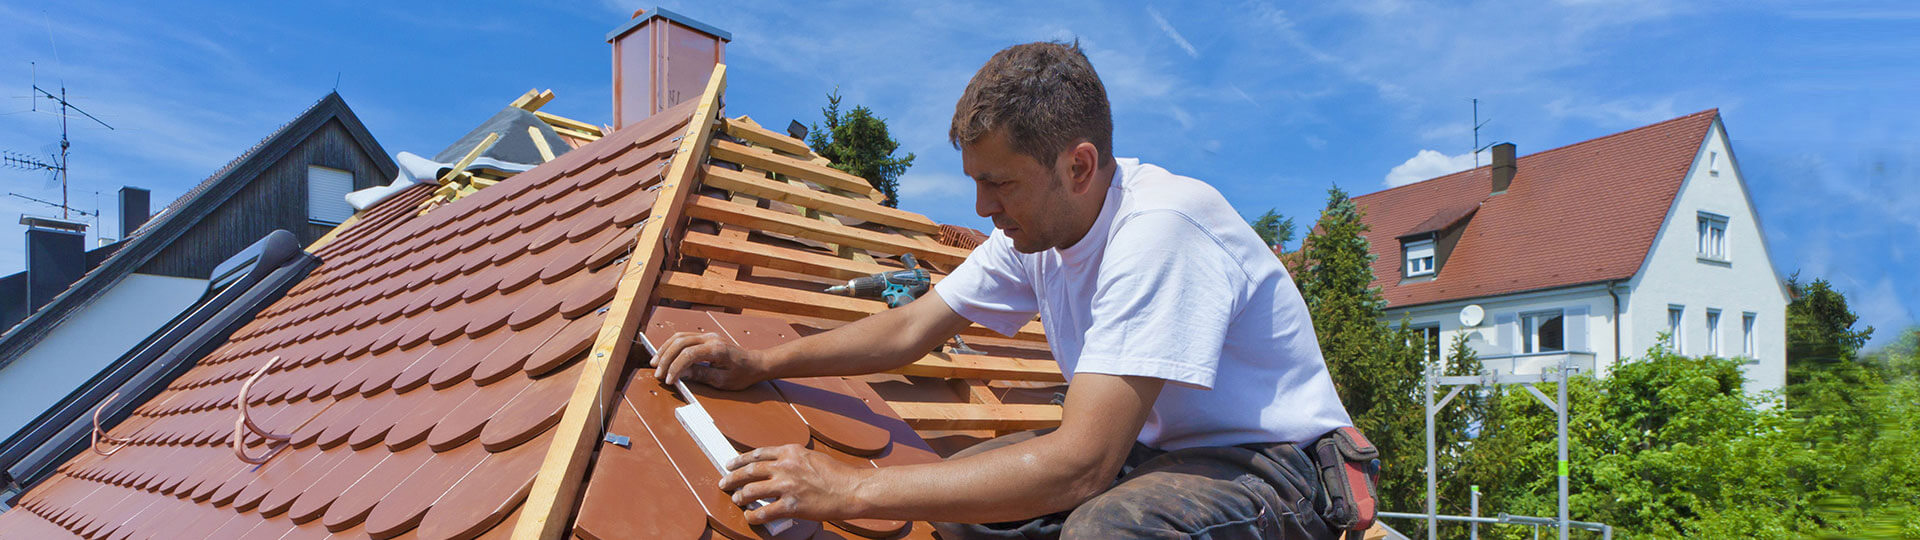 Bauleistungsversicherung - Dachdecker bei der Arbeit